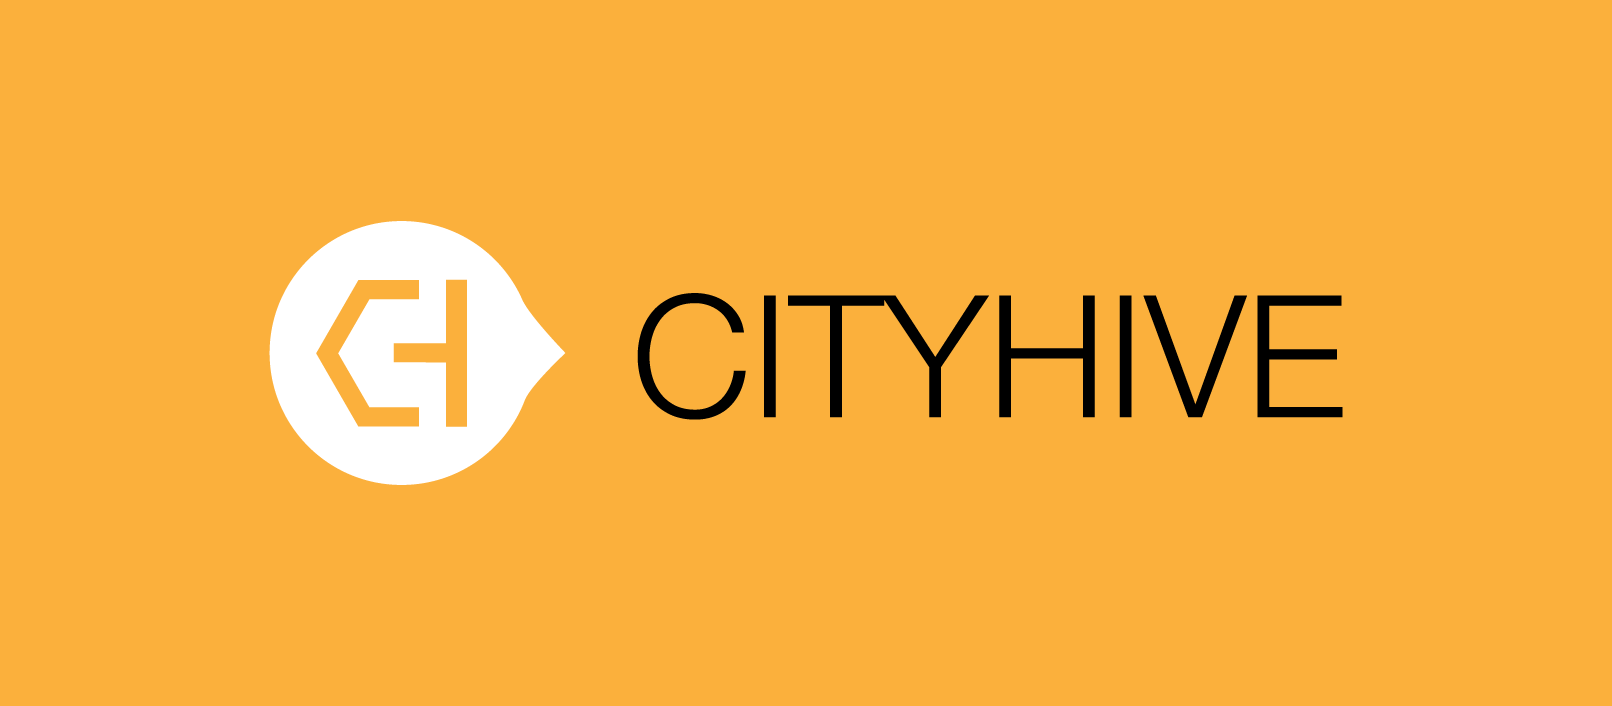 (c) Cityhive.net